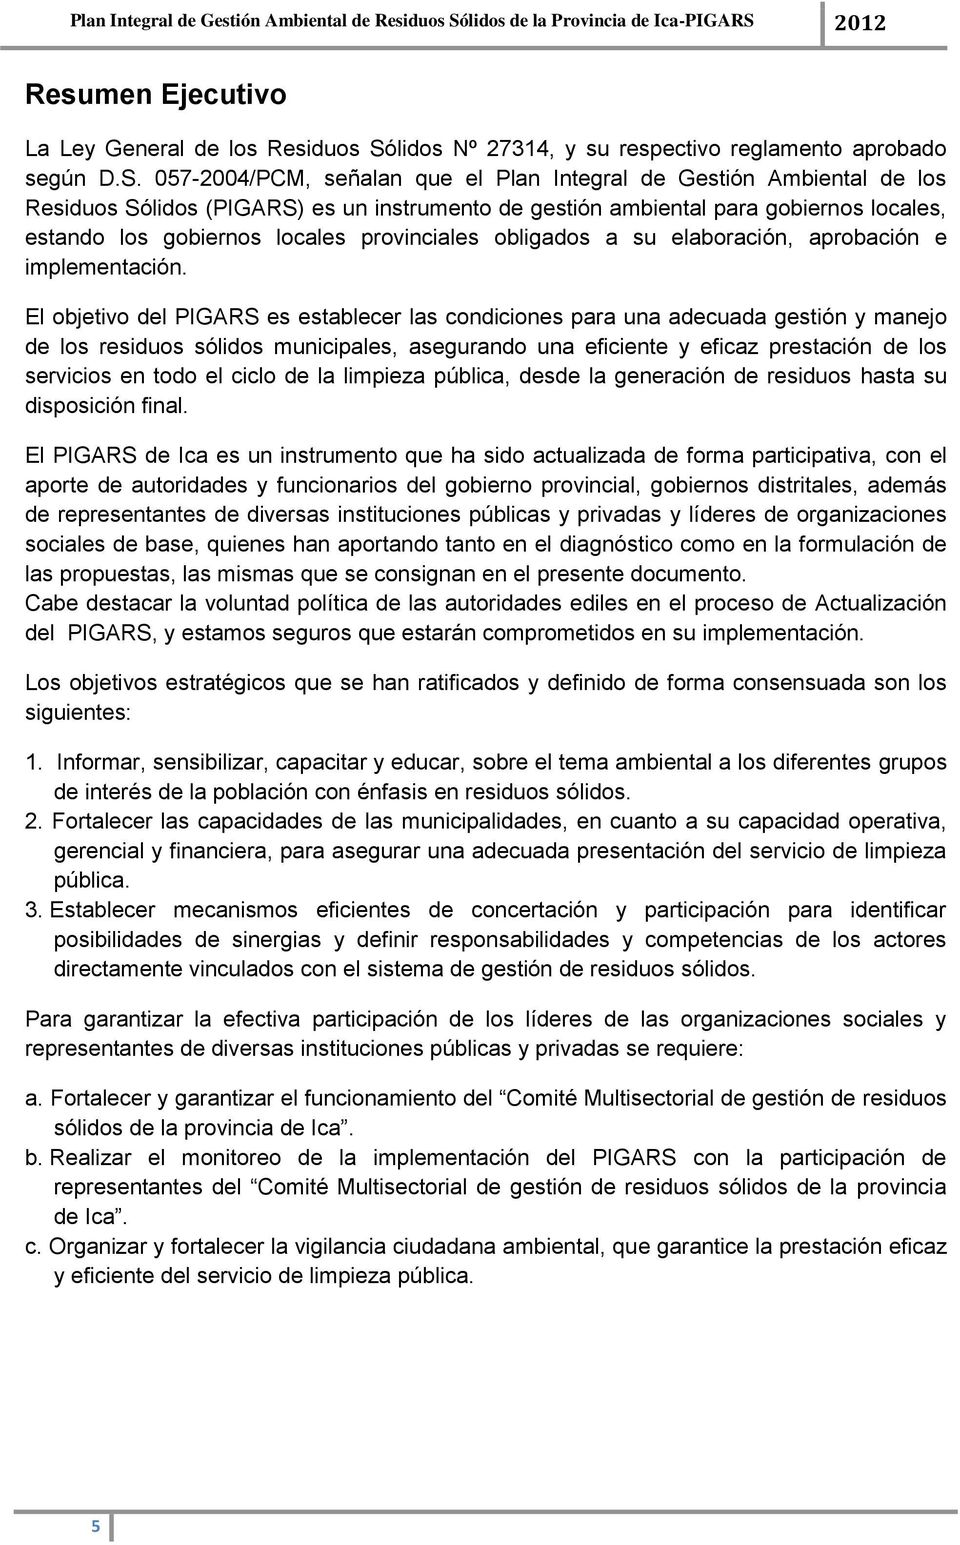 057-2004/PCM, señalan que el Plan Integral de Gestión Ambiental de los Residuos Sólidos (PIGARS) es un instrumento de gestión ambiental para gobiernos locales, estando los gobiernos locales